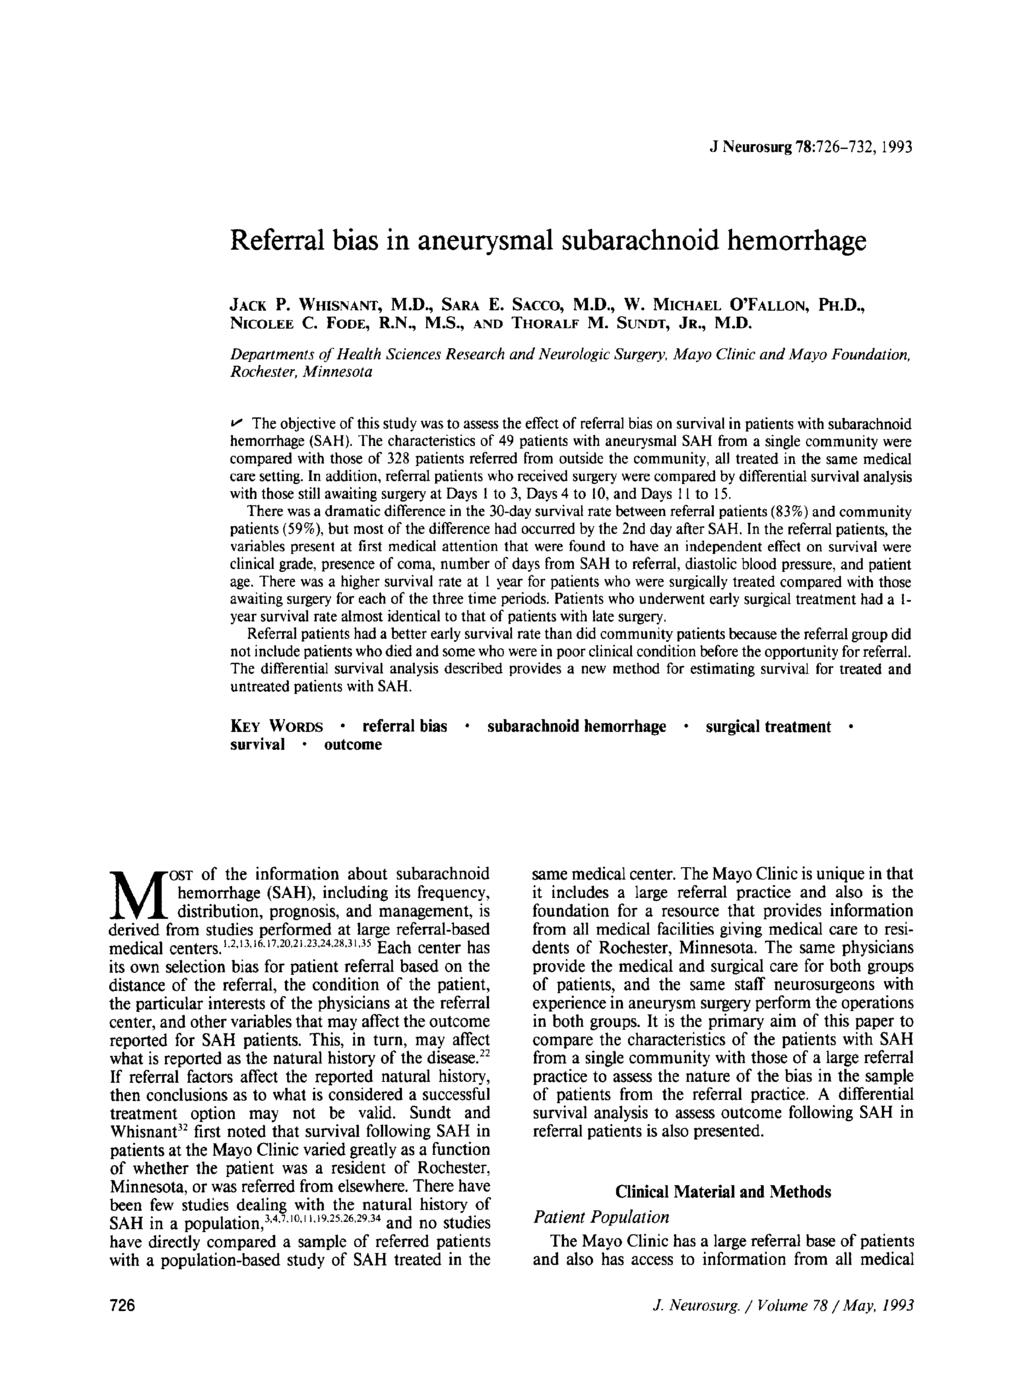 J Neurosurg 78:726-732, 1993 Referral bias in aneurysmal subarachnoid hemorrhage JACK P. WHISNANT~ M.D., SARA E. SACCO, M.D., W. MICHAEL O'FALLON, PH.D., NICOLEE C. FODE, R.N., M.S., AND THORALF M.